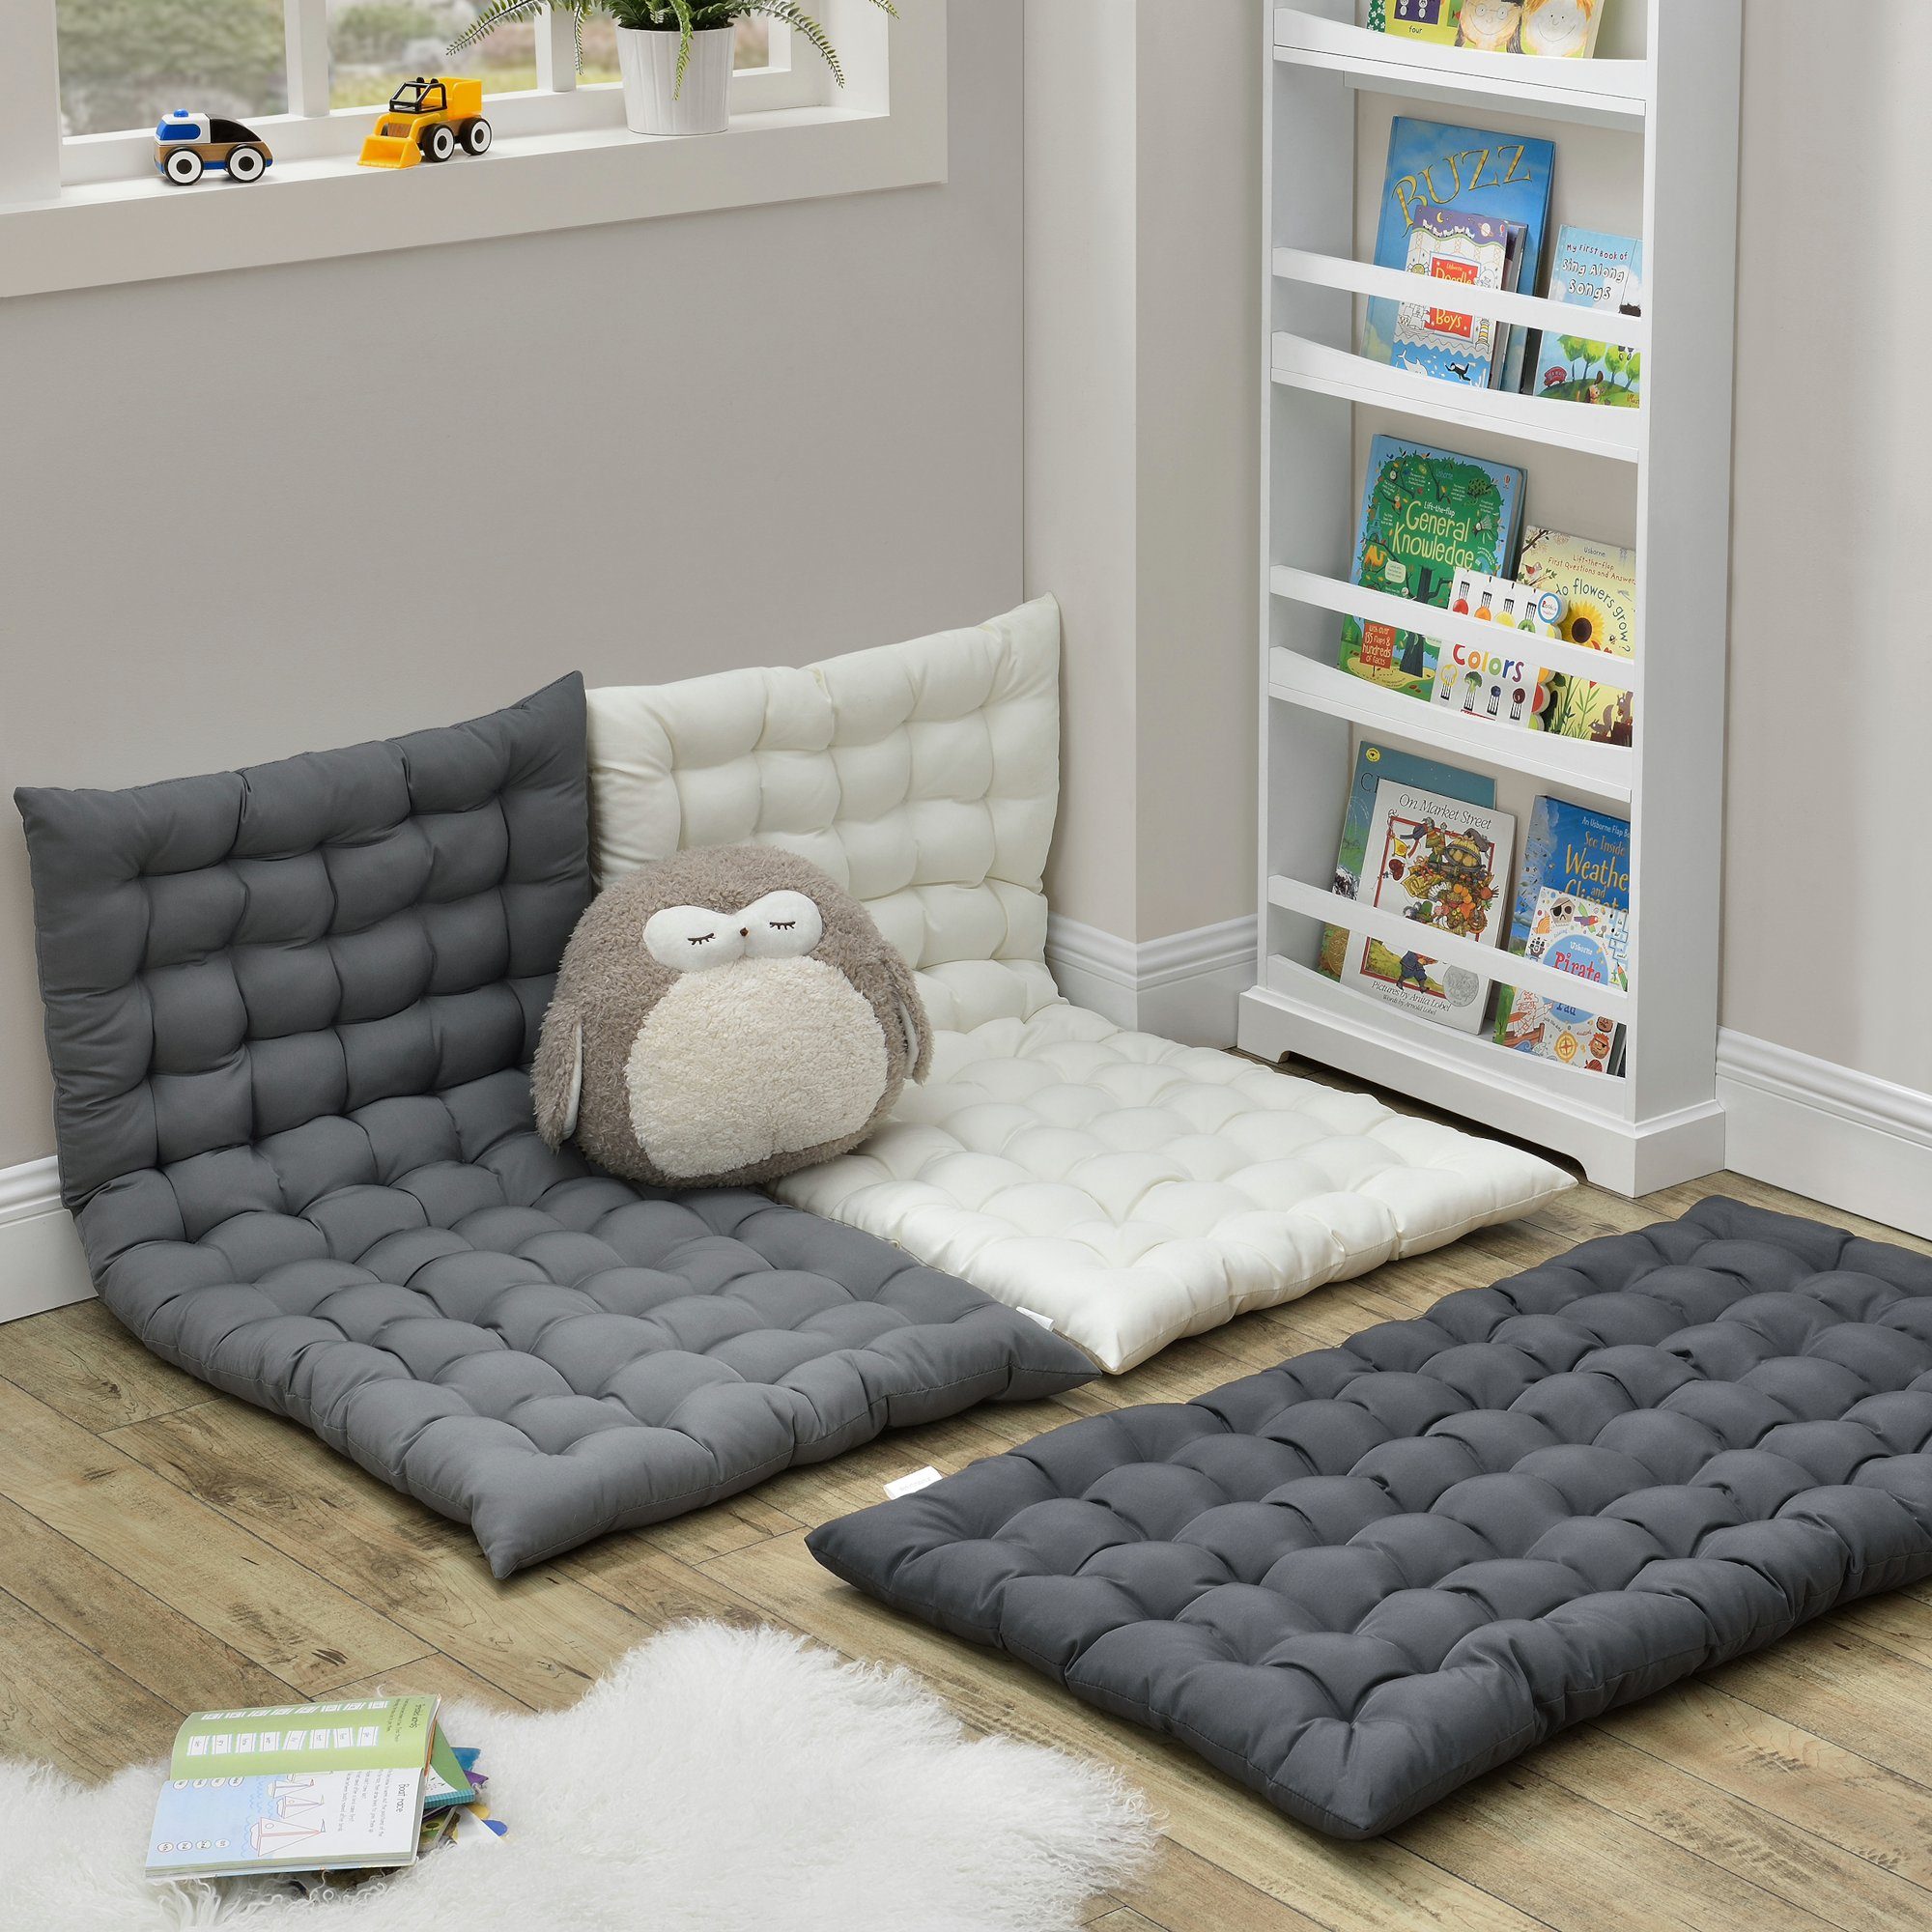 en.casa Bodenkissen, »Espoo« Bodenmatratze für Kinderzimmer Sitzecke  120x60cm Beige online kaufen | OTTO